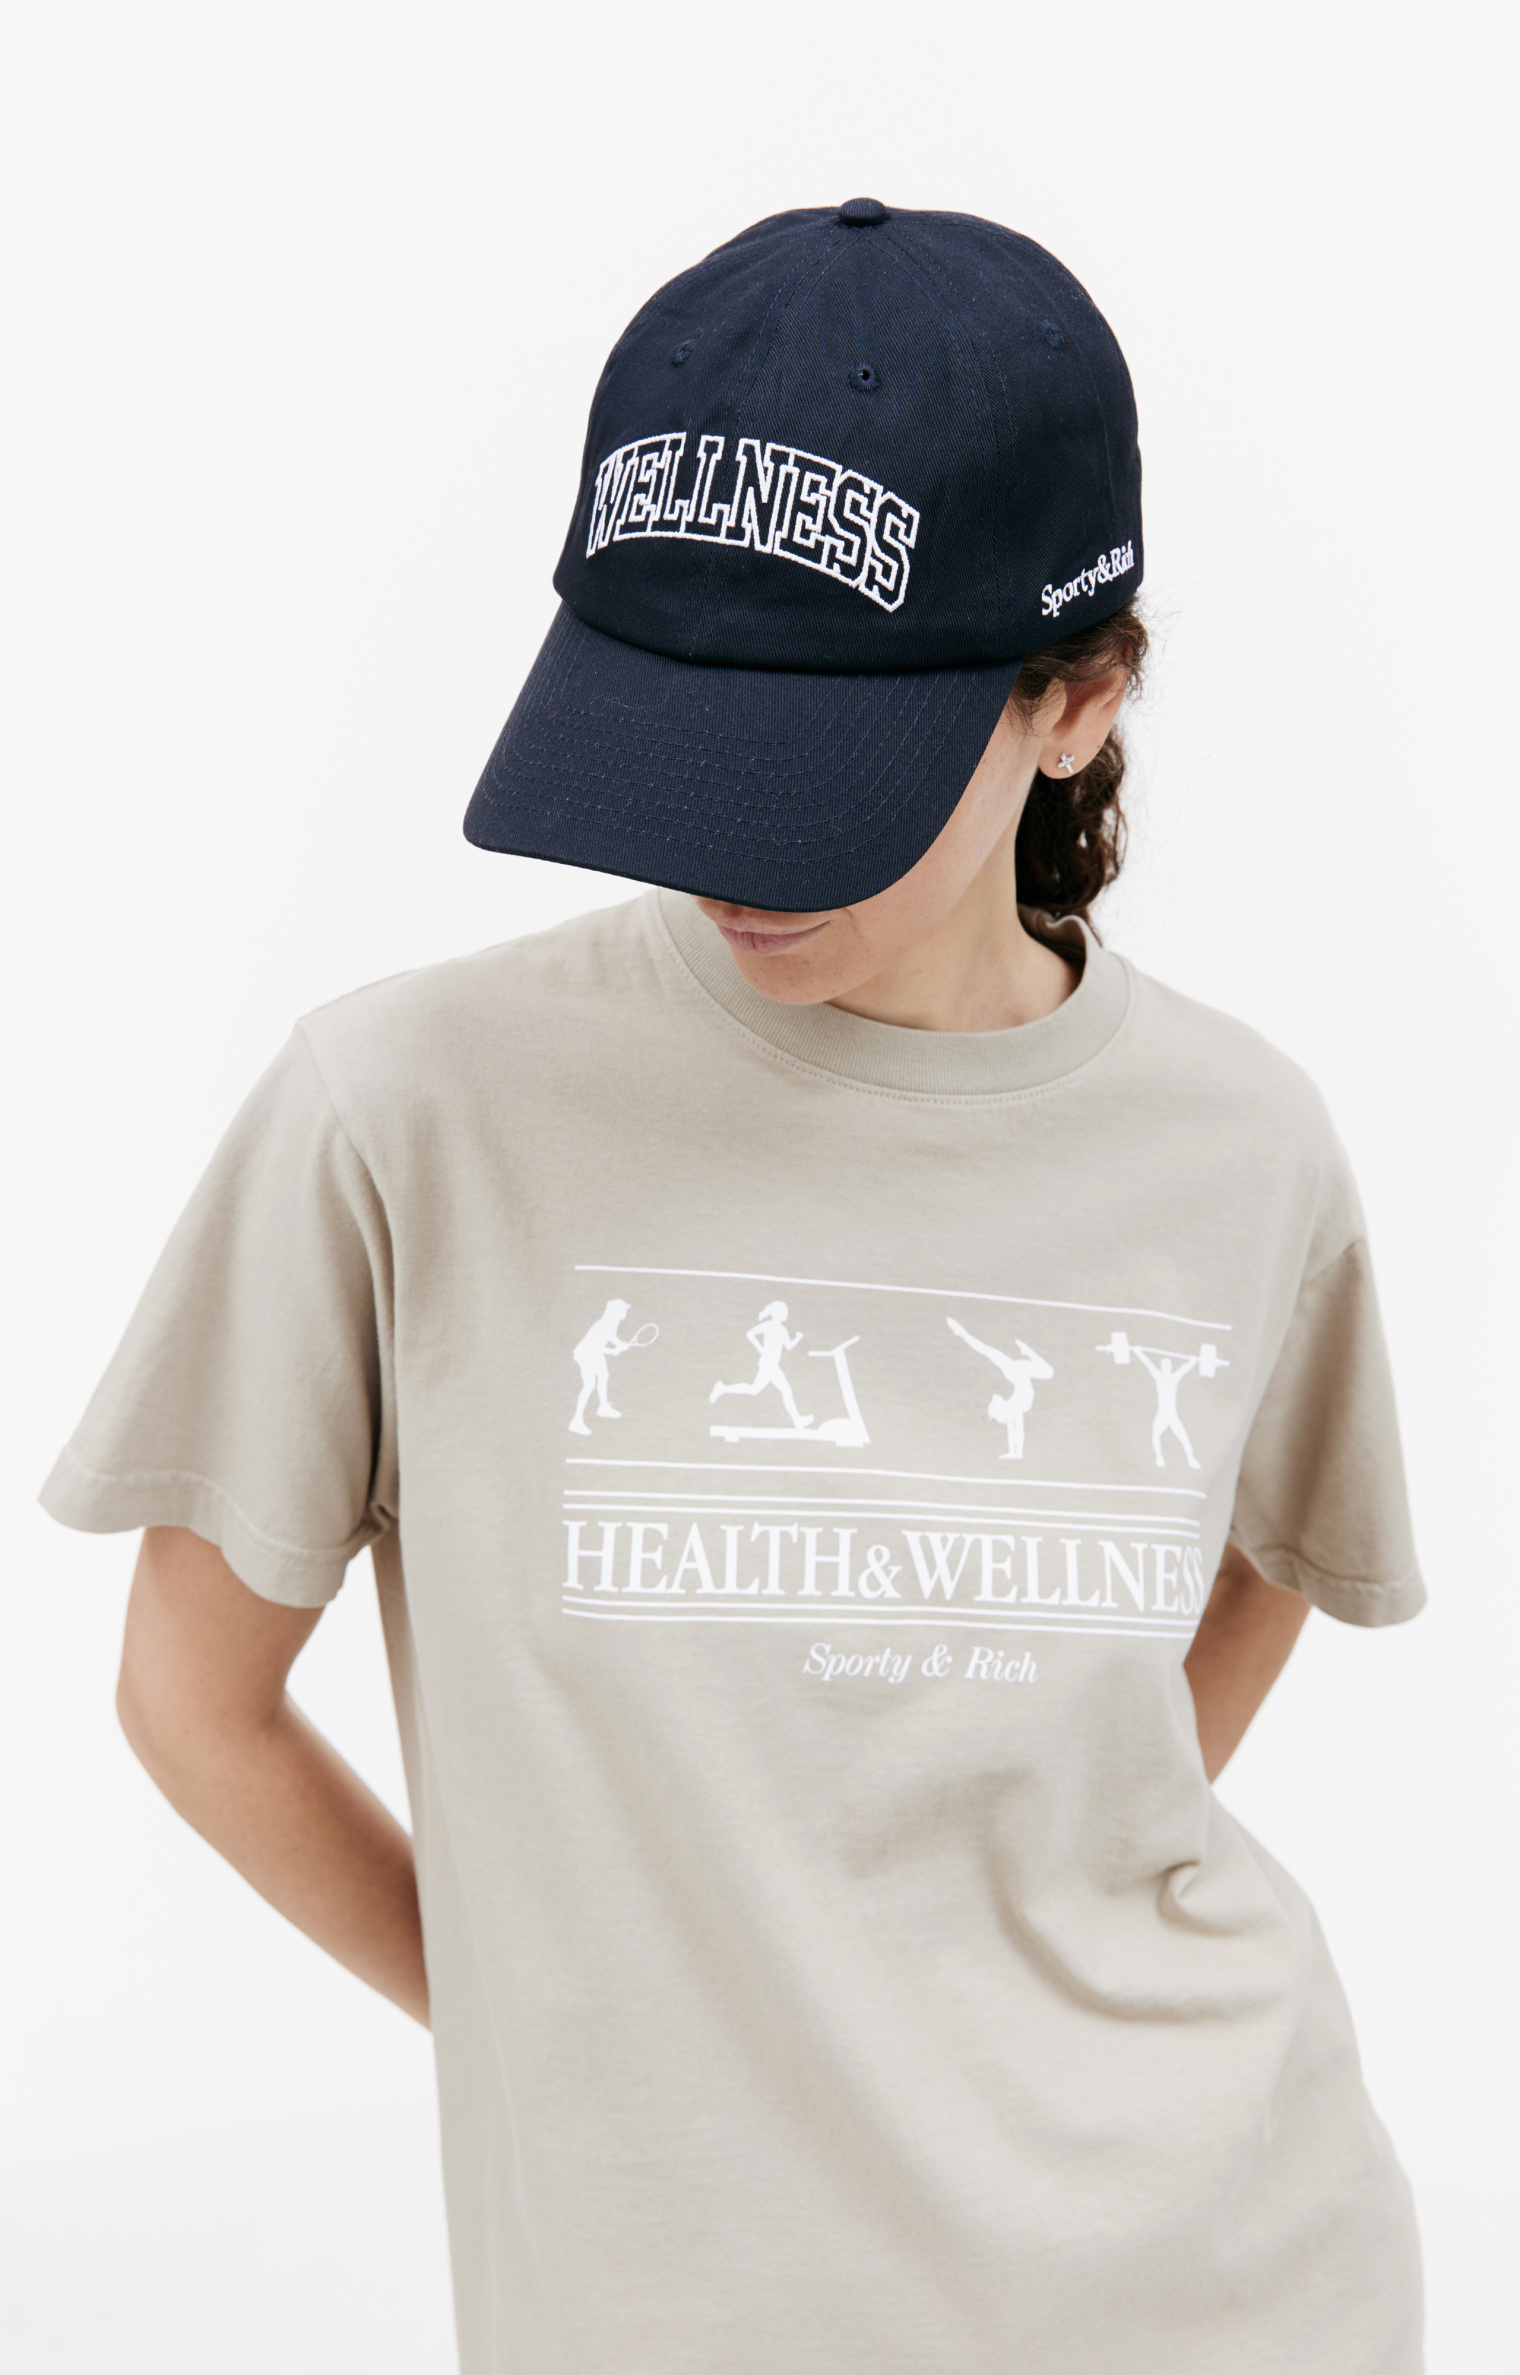 SPORTY & RICH Health & Wellness t-shirt